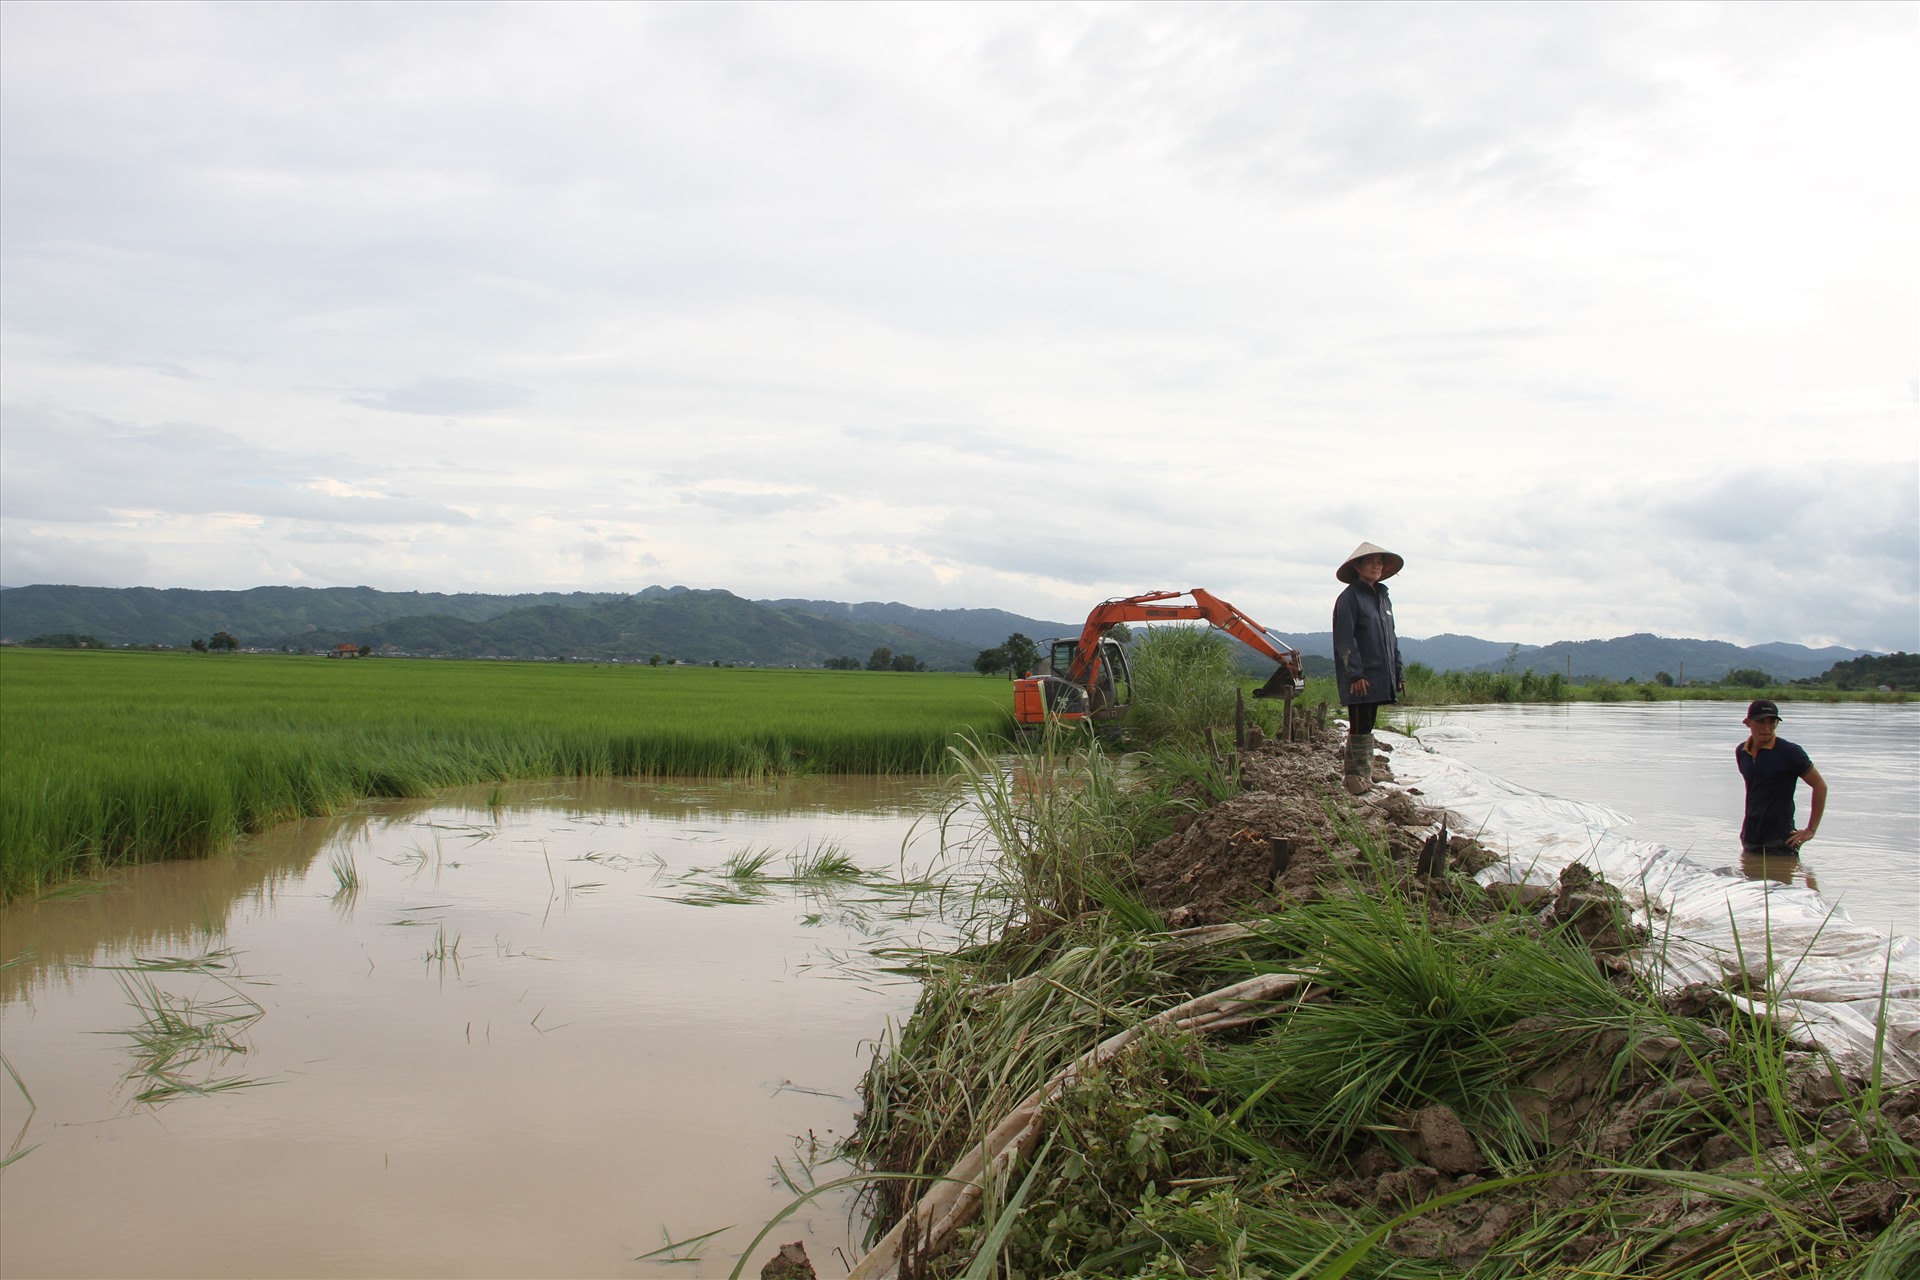 Mưa lũ kéo dài khiến nước sông Krông Ana dâng cao, gây vỡ khoảng 200m đê bao ở xã Buôn Triết, huyện Lắk (Đắk Lắk) và nhấn chìm hàng trăm ha lúa của bà con nông dân - Ảnh: Lao động